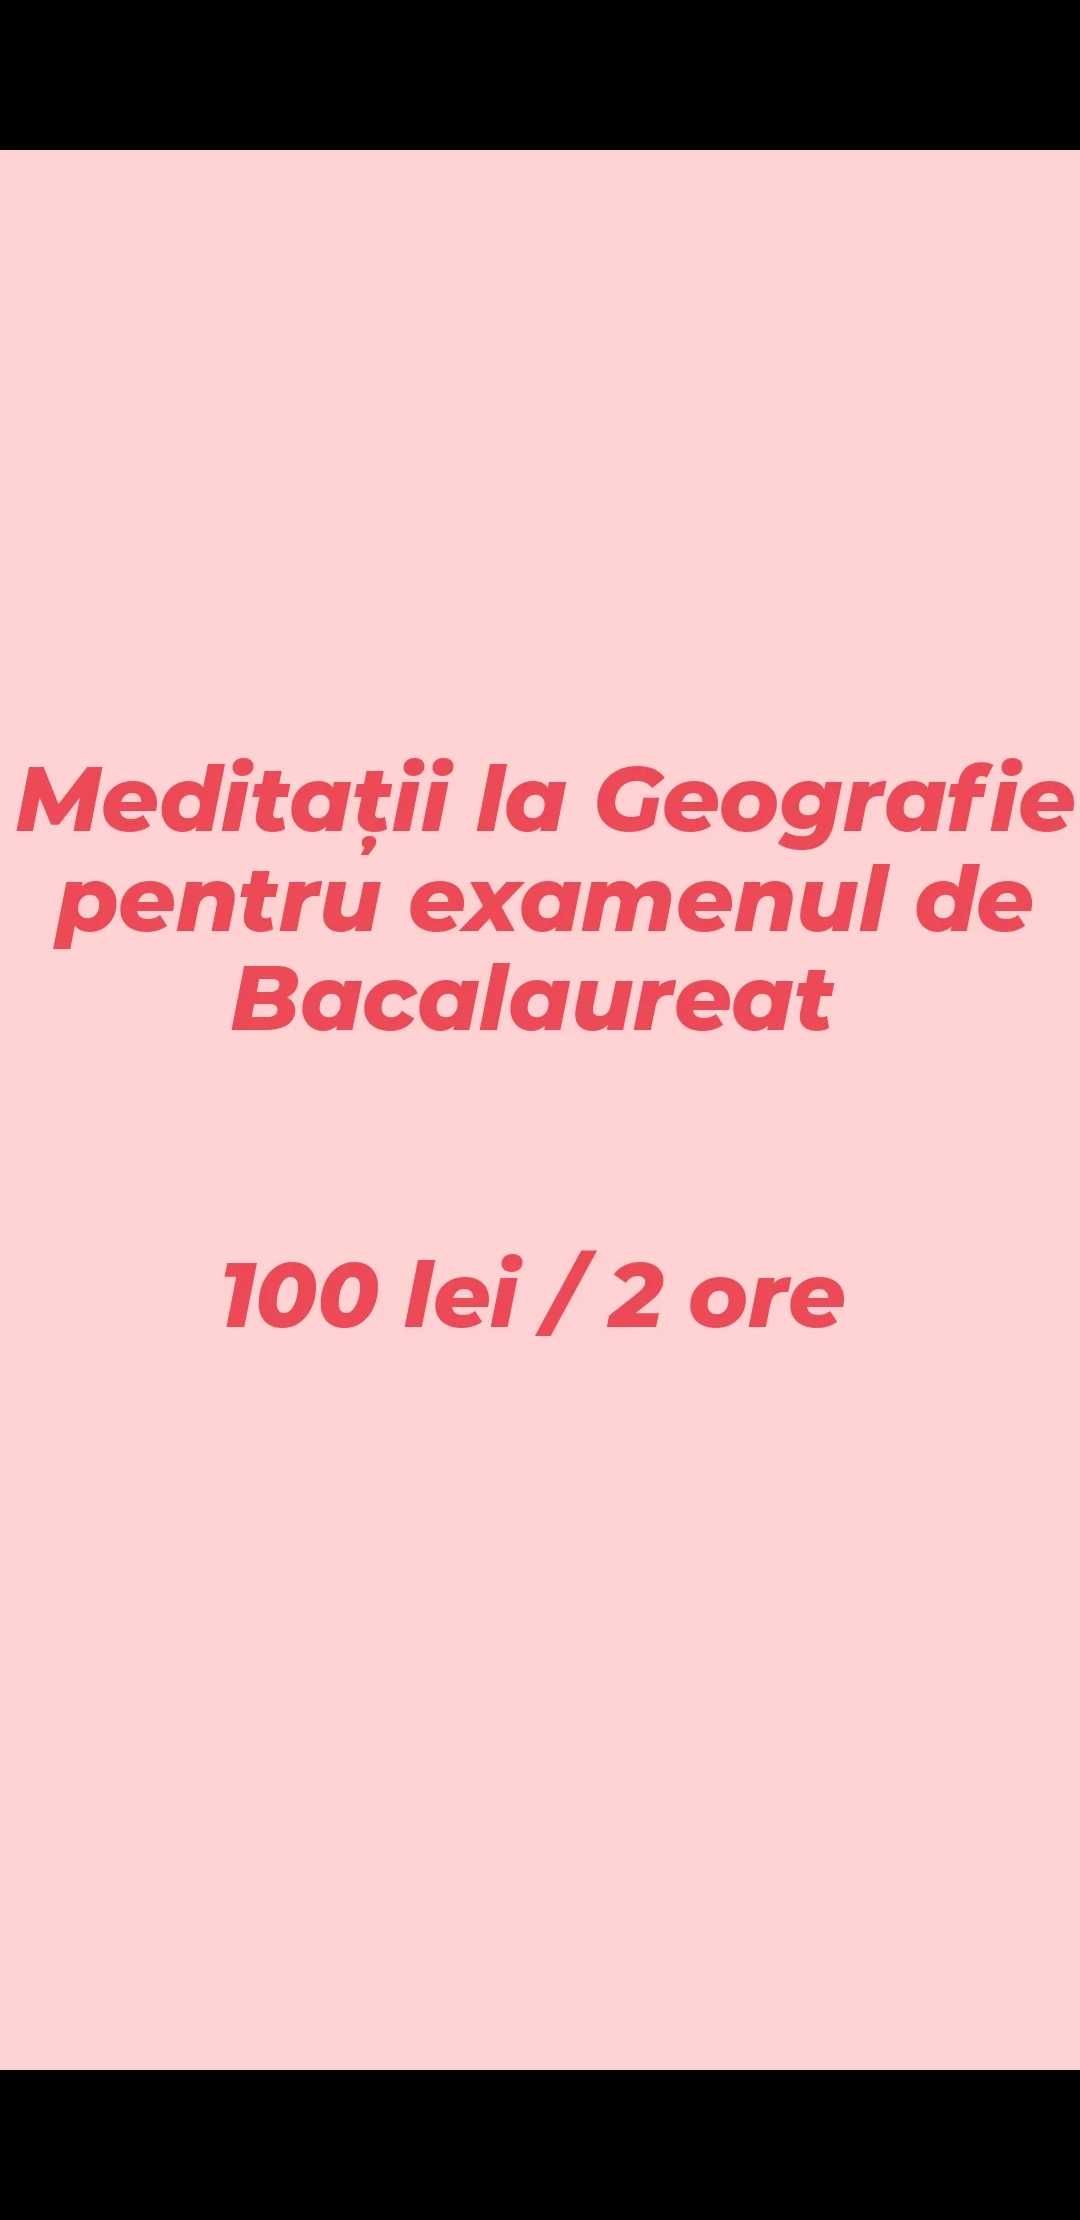 Meditații la română, geografie și engleză FIZIC